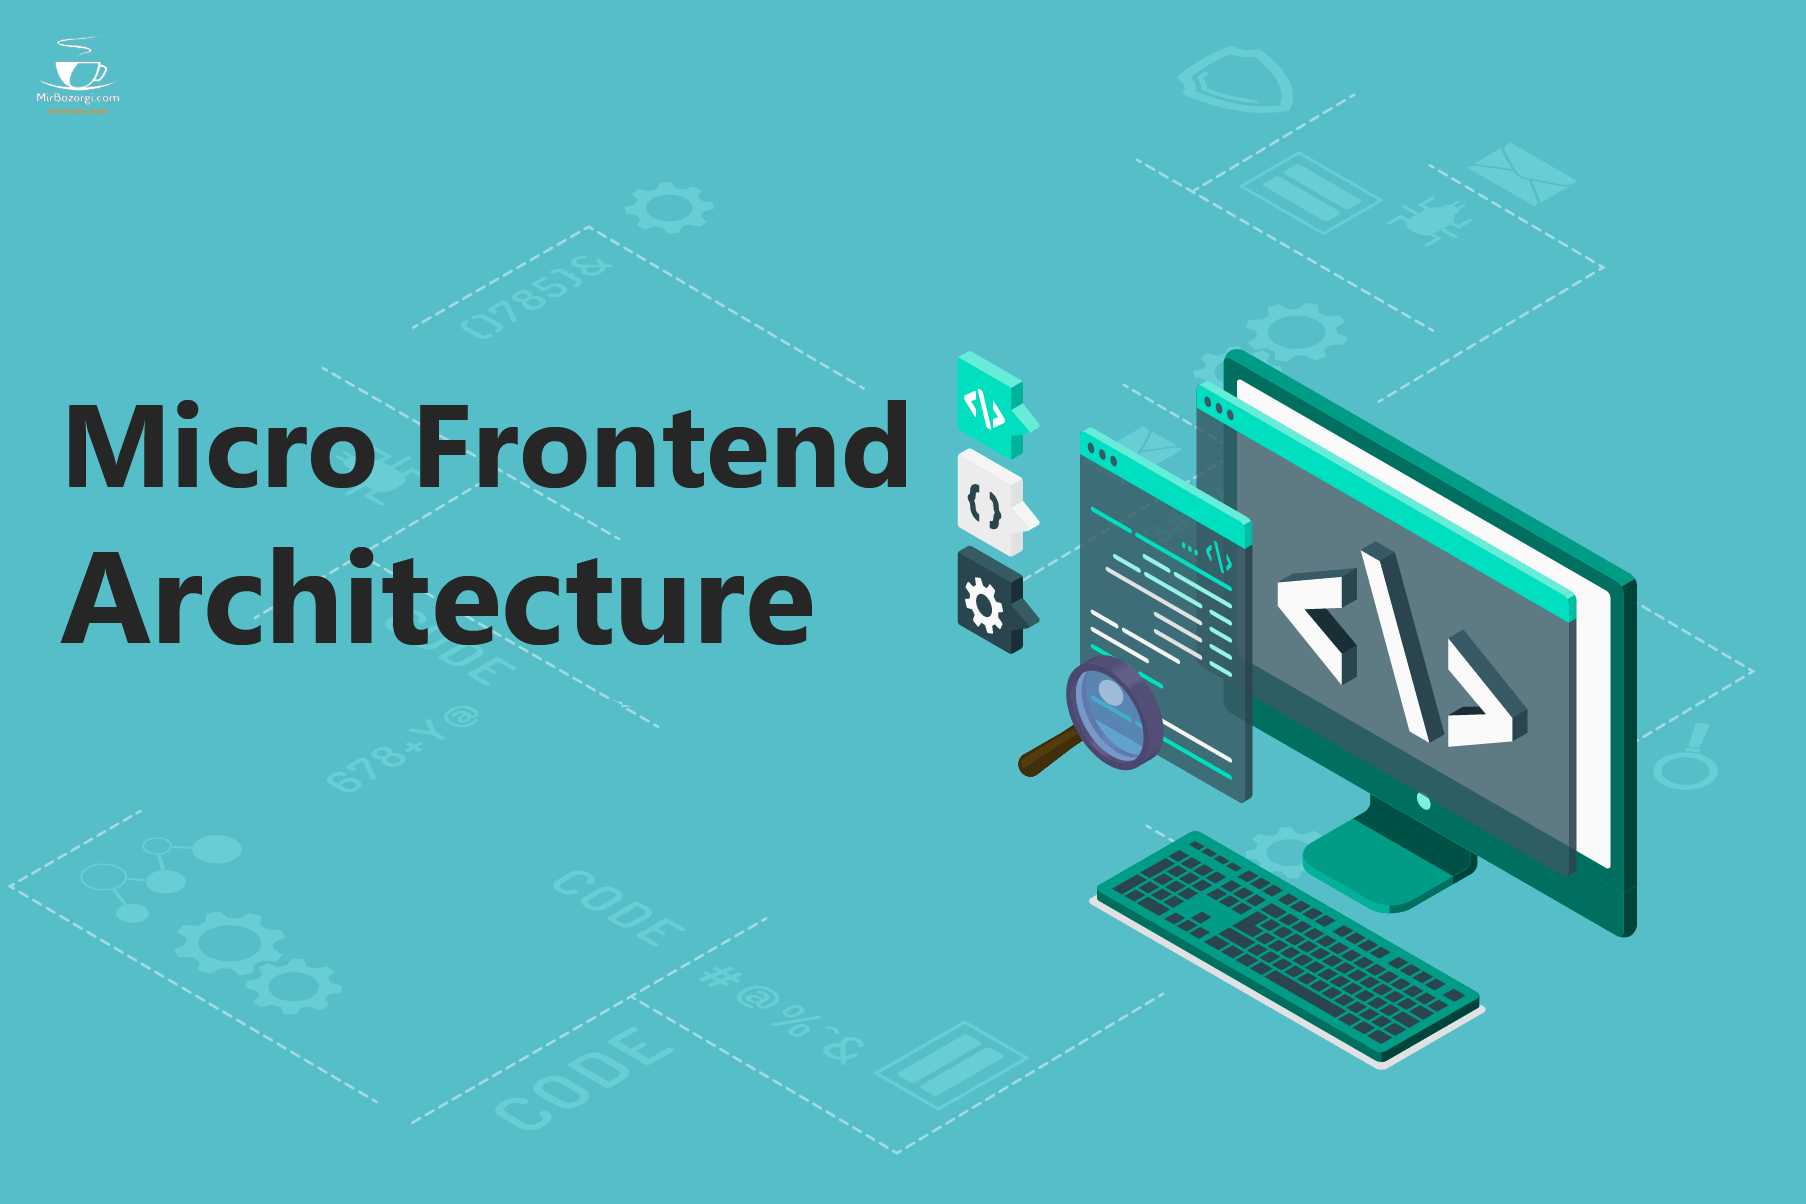 Micro Frontend Architecture